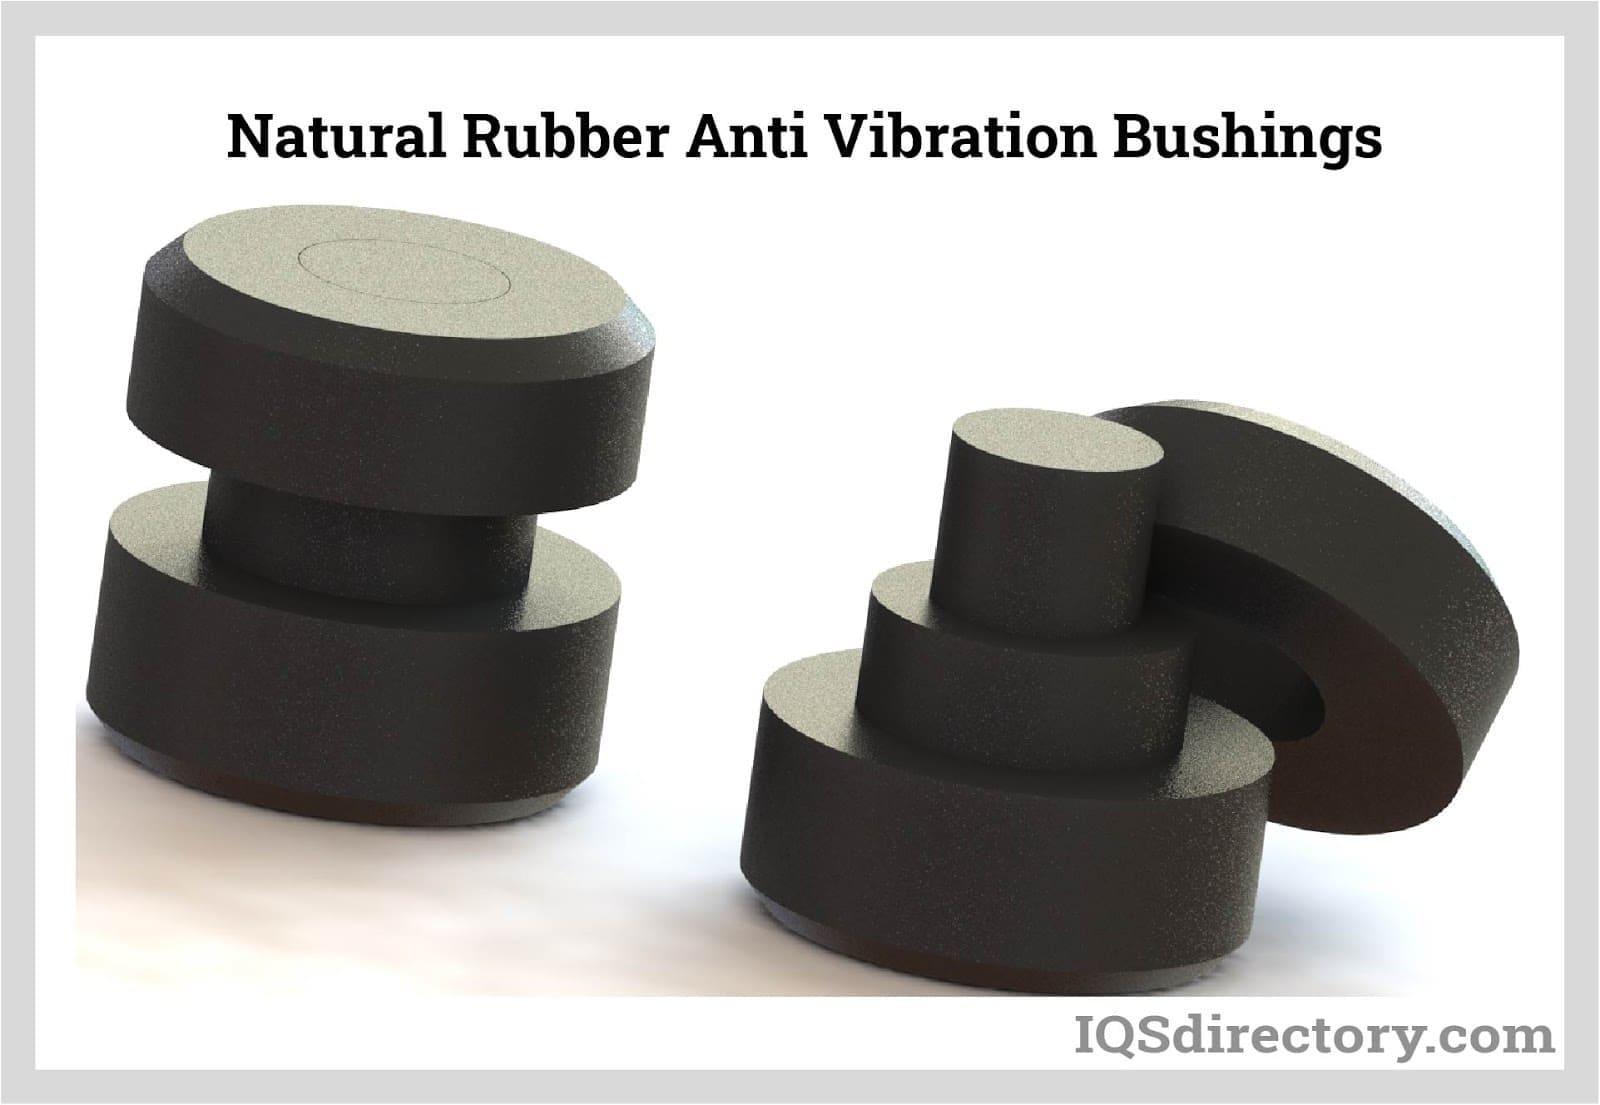 Natural Rubber Anti Vibration Bushings